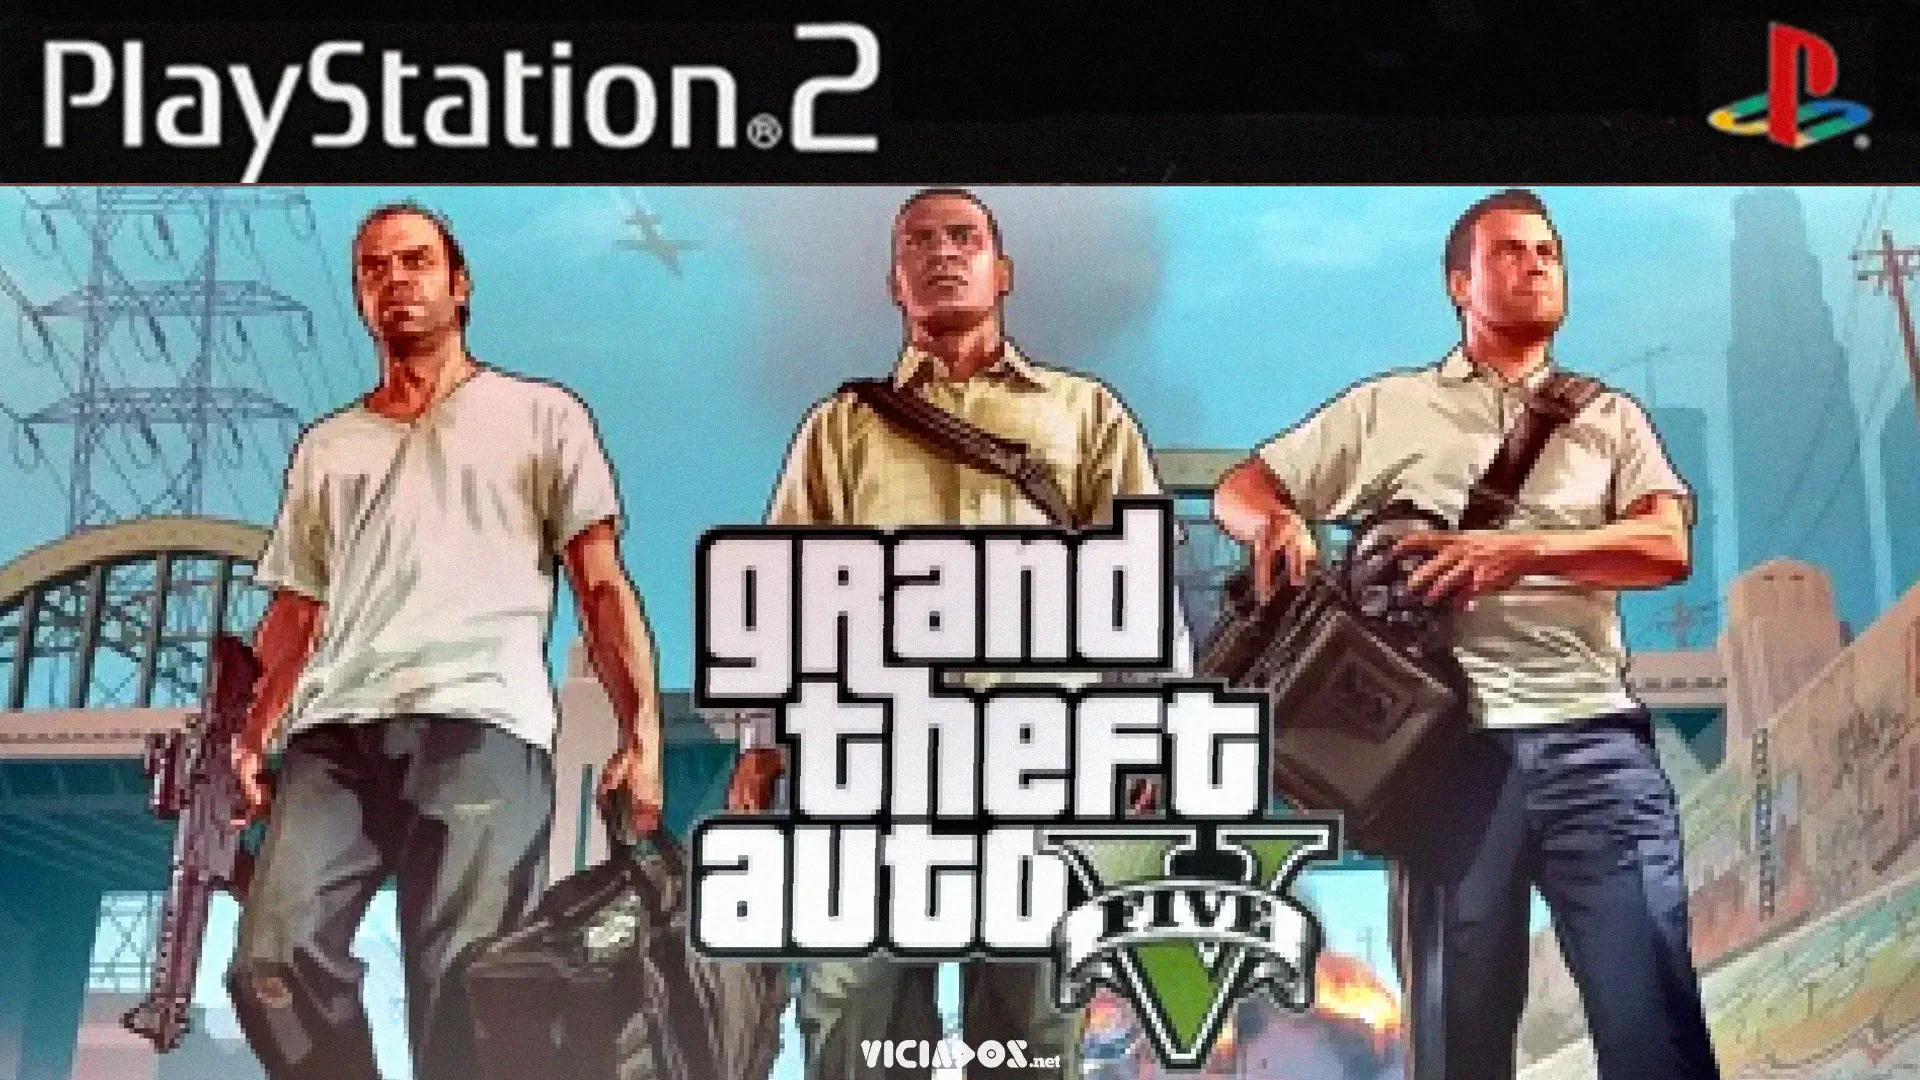 GTA 5 | Fã imagina versão de PlayStation 2 em trailer incrível 2022 Viciados